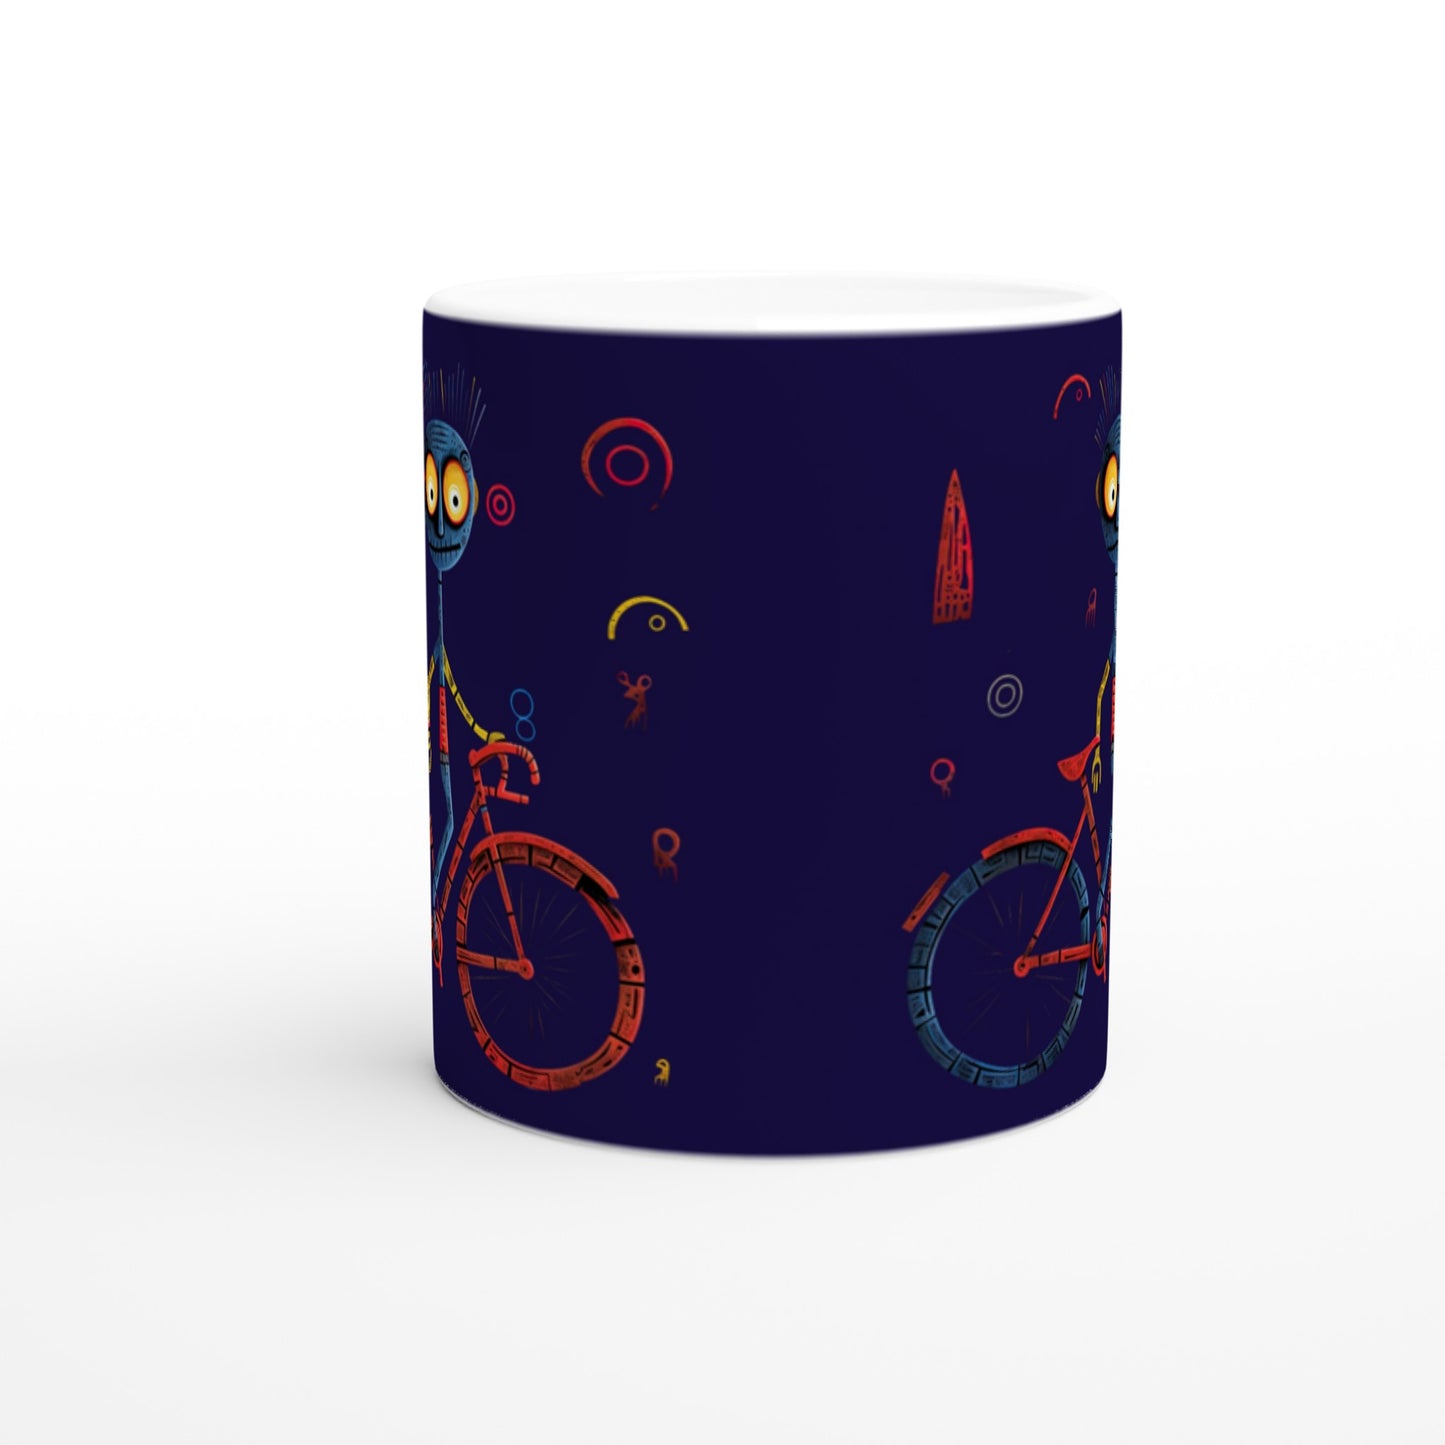 11oz ceramic mug with abstract cyclist print